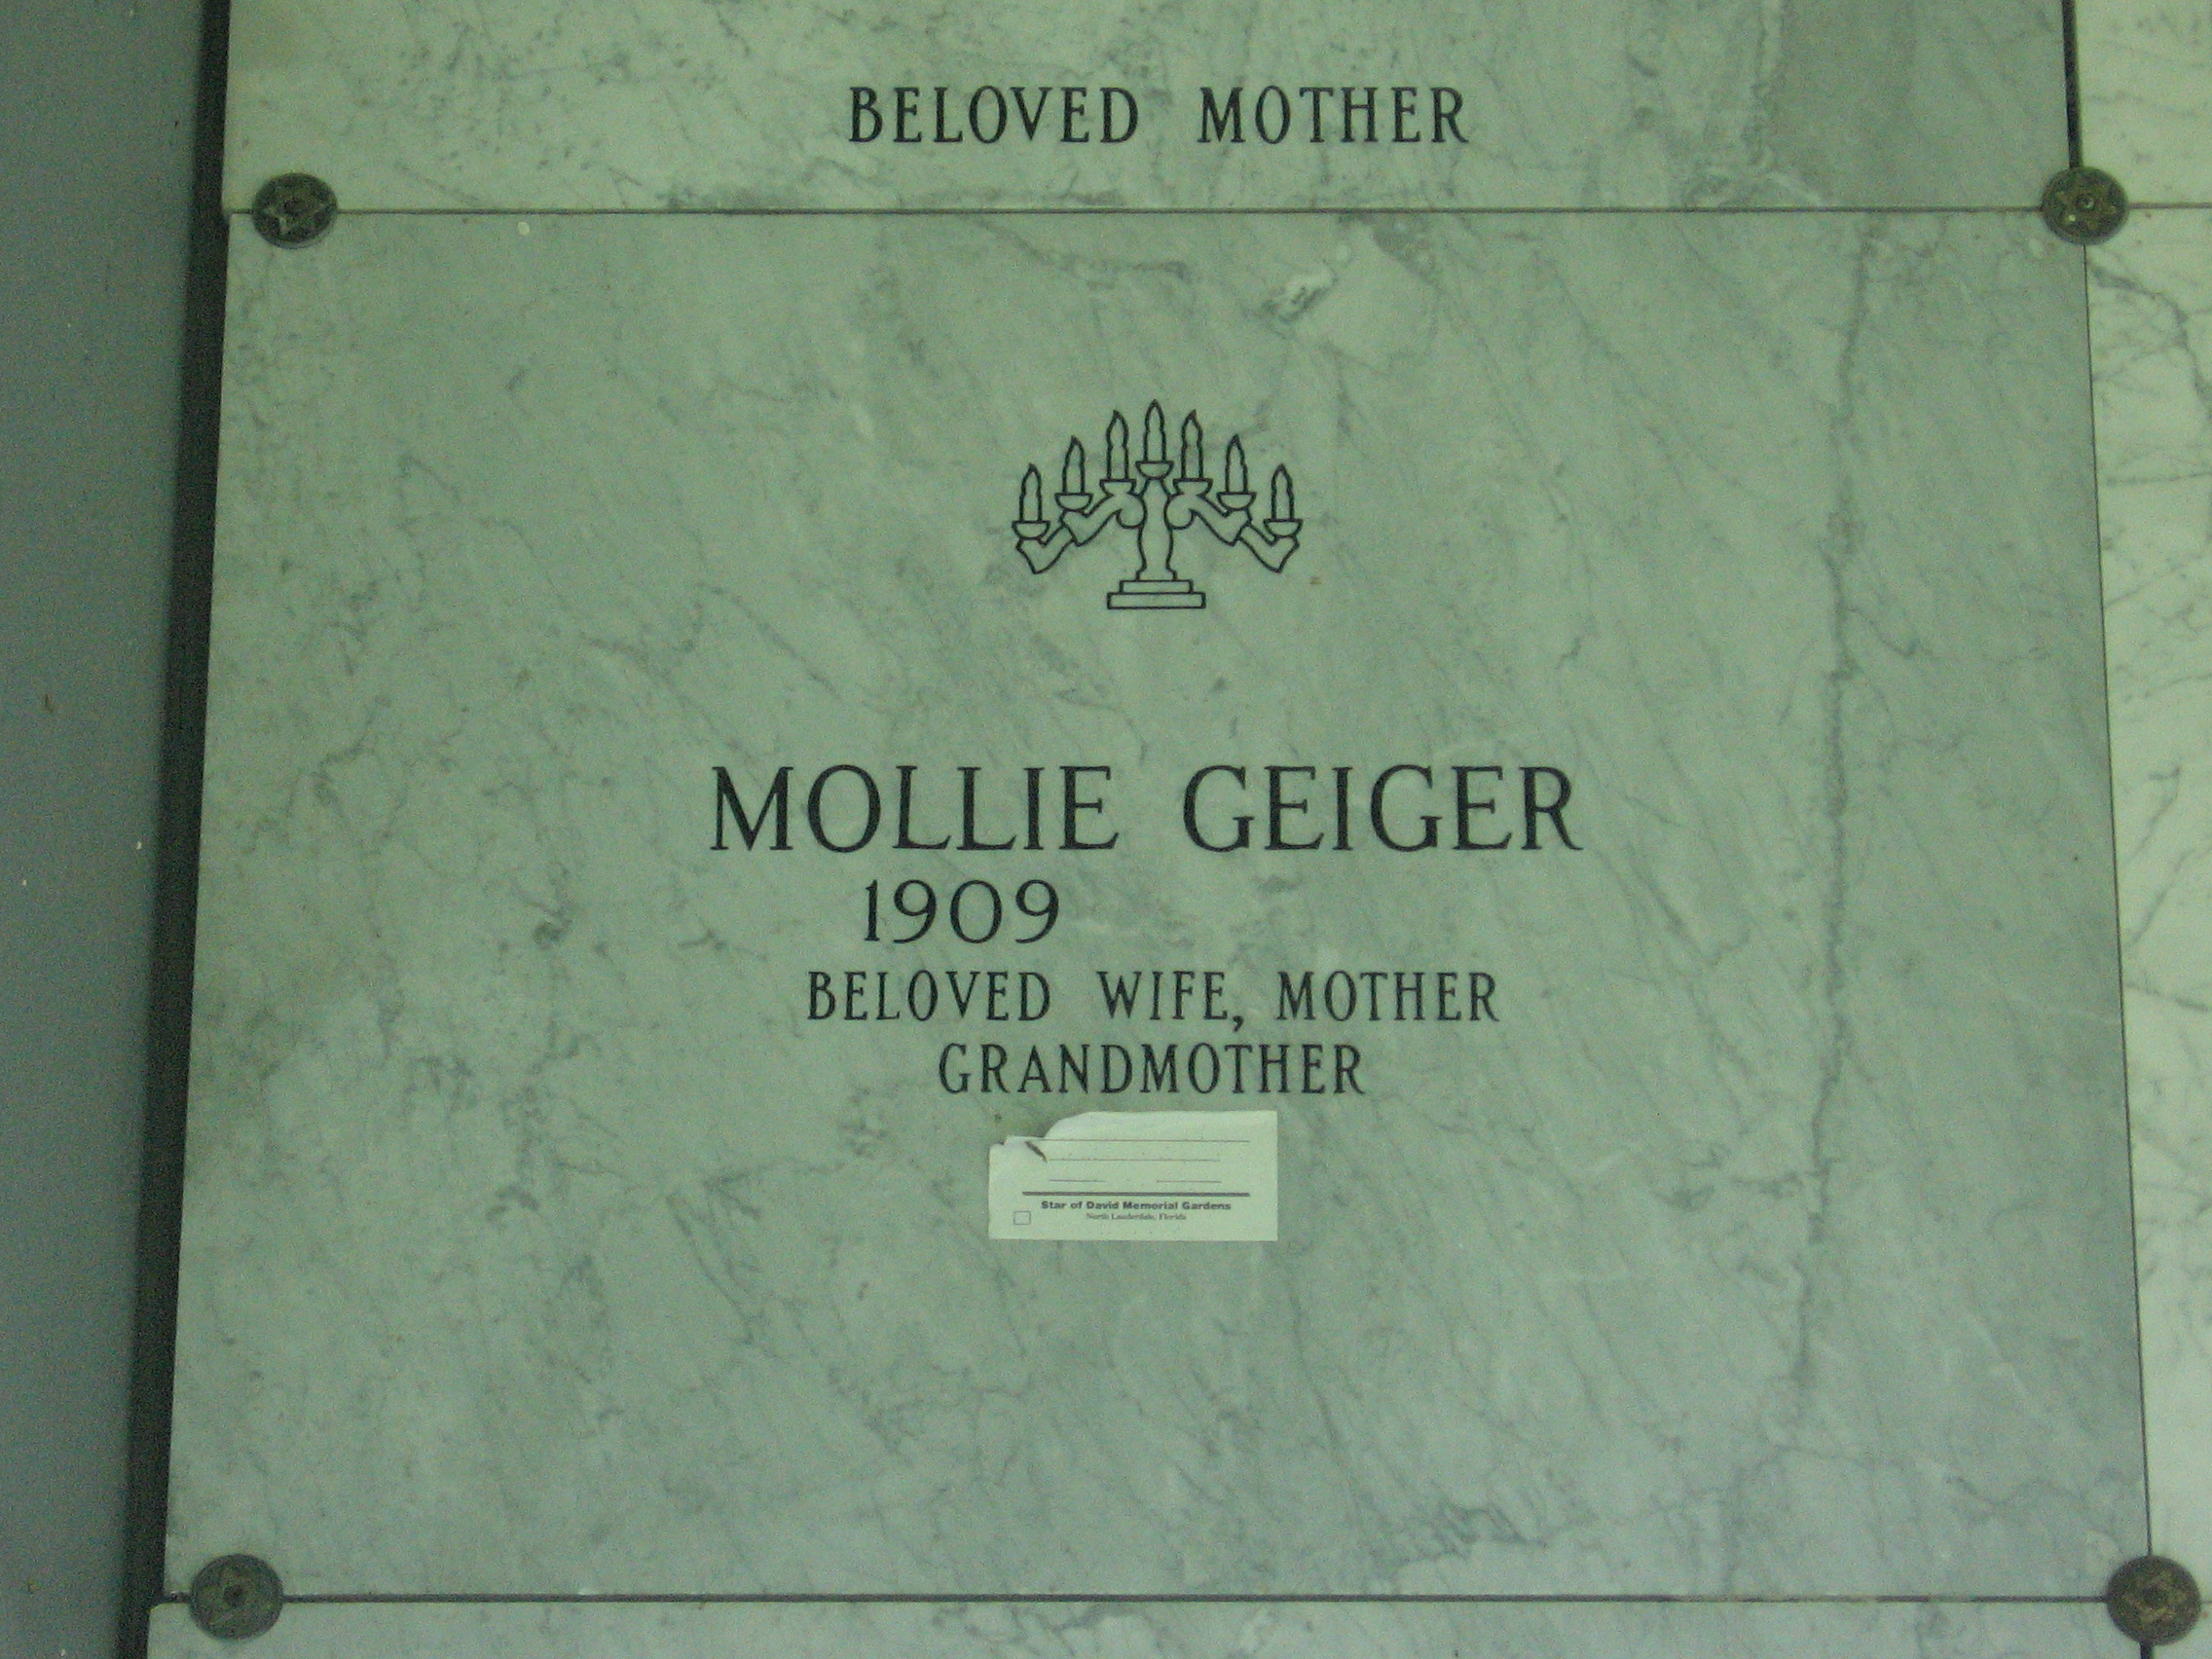 Mollie Geiger